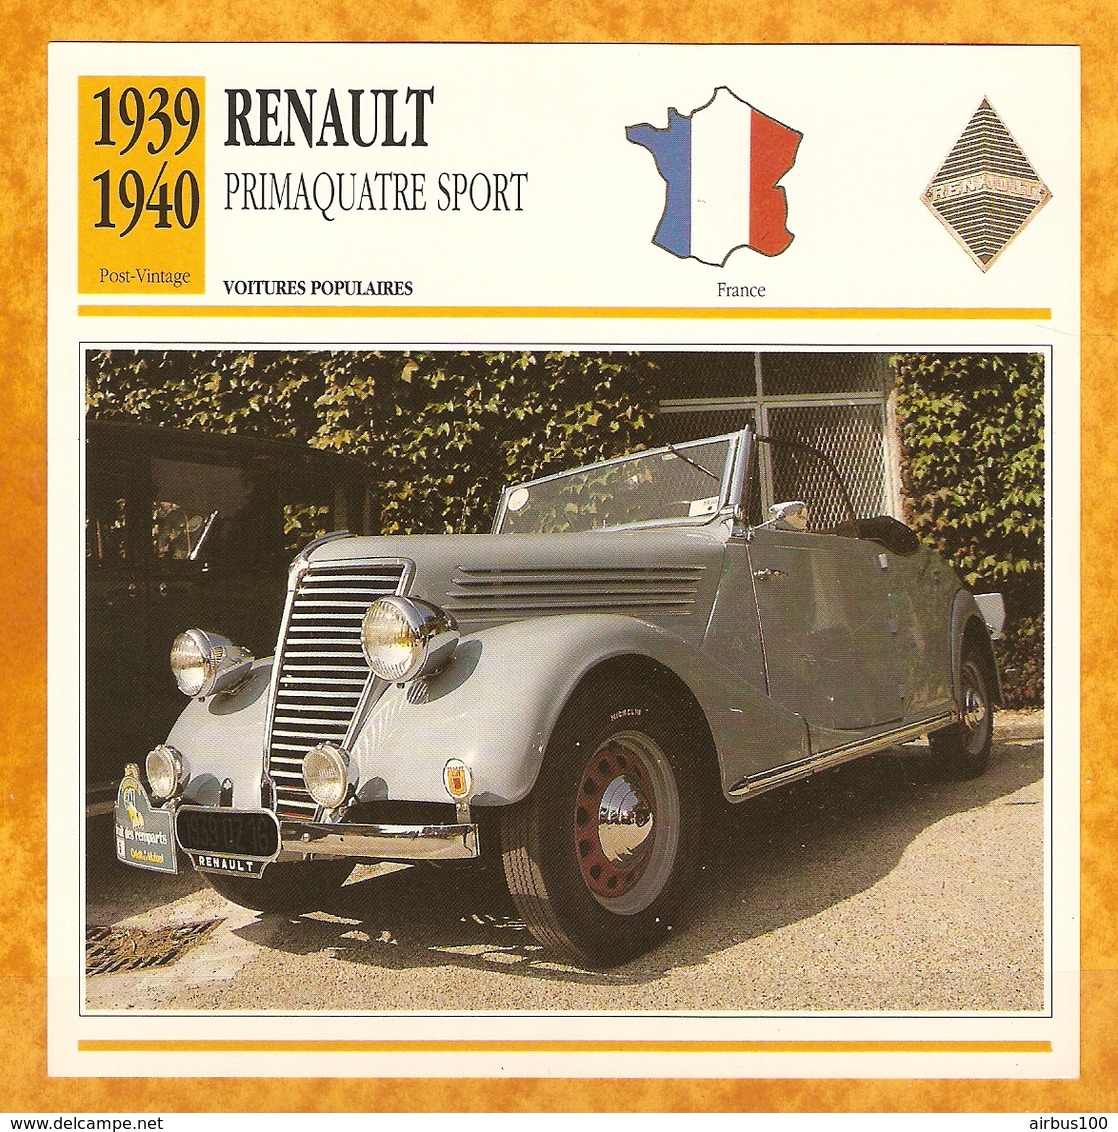 1939 FRANCE VIEILLE VOITURE RENAULT PRIMAQUATRE SPORT - FRANCE OLD CAR - FRANCIA VIEJO COCHE - VECCHIA MACCHINA - Voitures